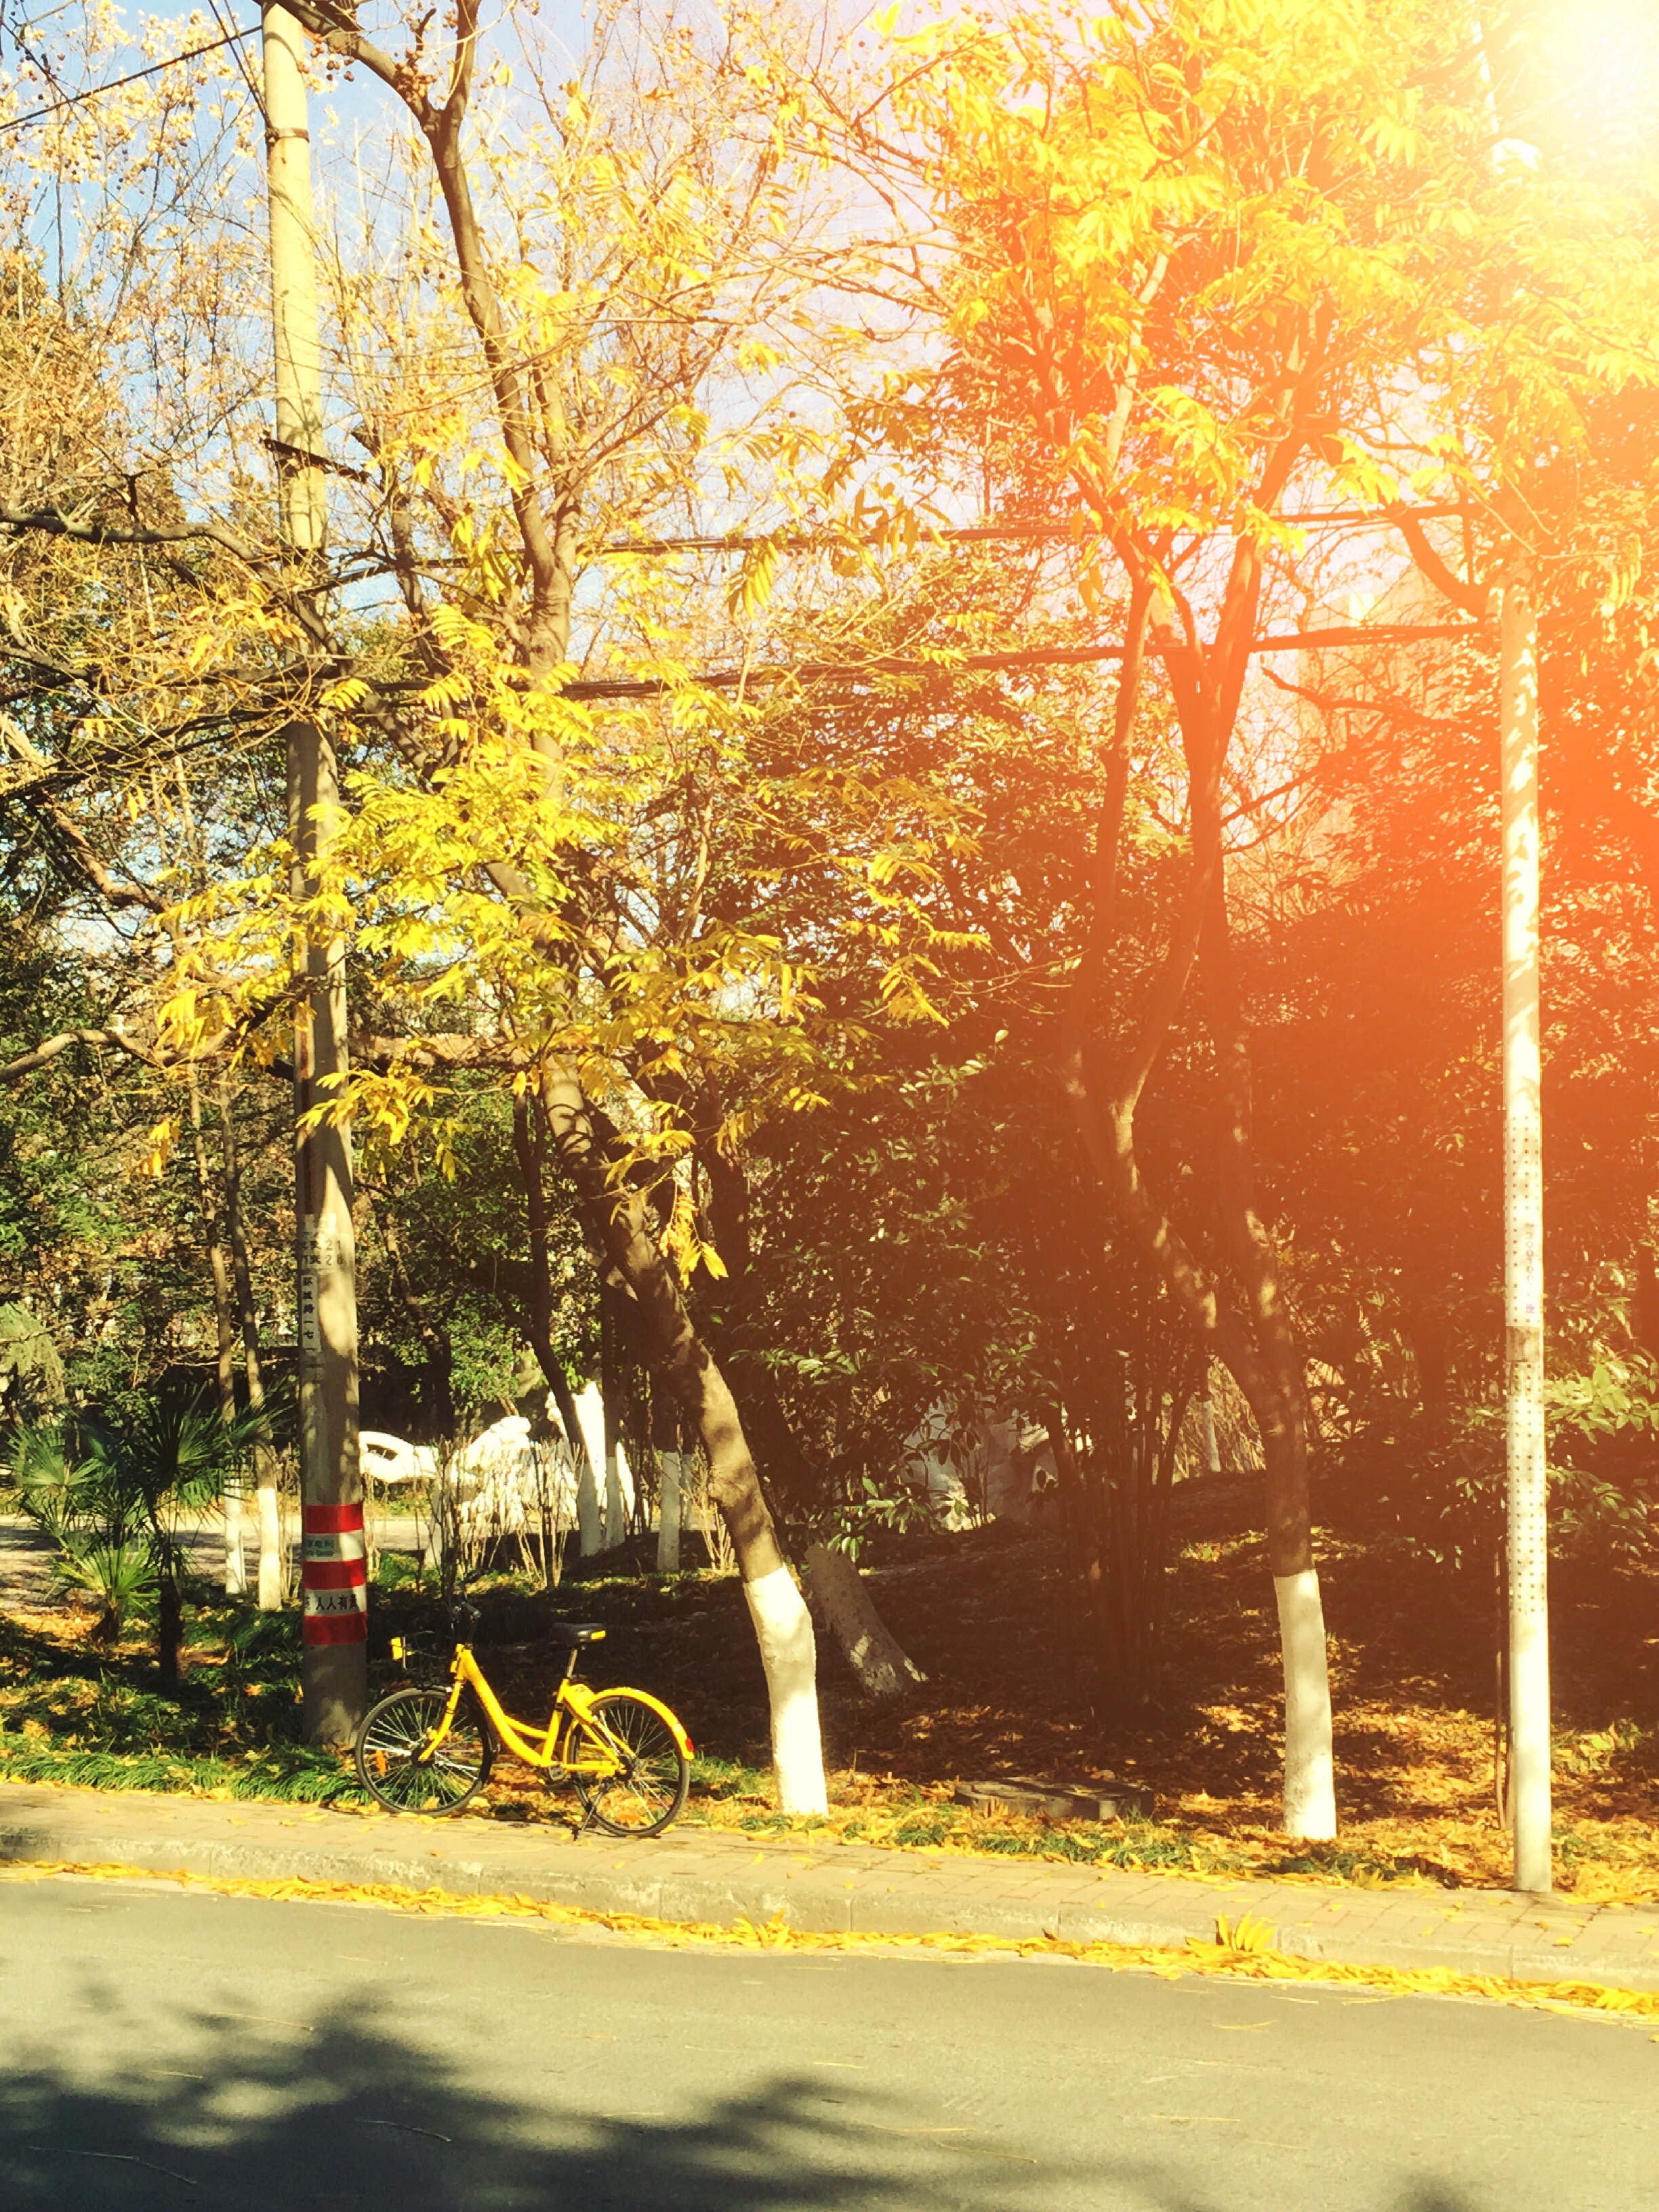 8张漂亮秋天风景早上好图片带字带祝福语 好看的秋日风景早安问候祝福语图片_生活